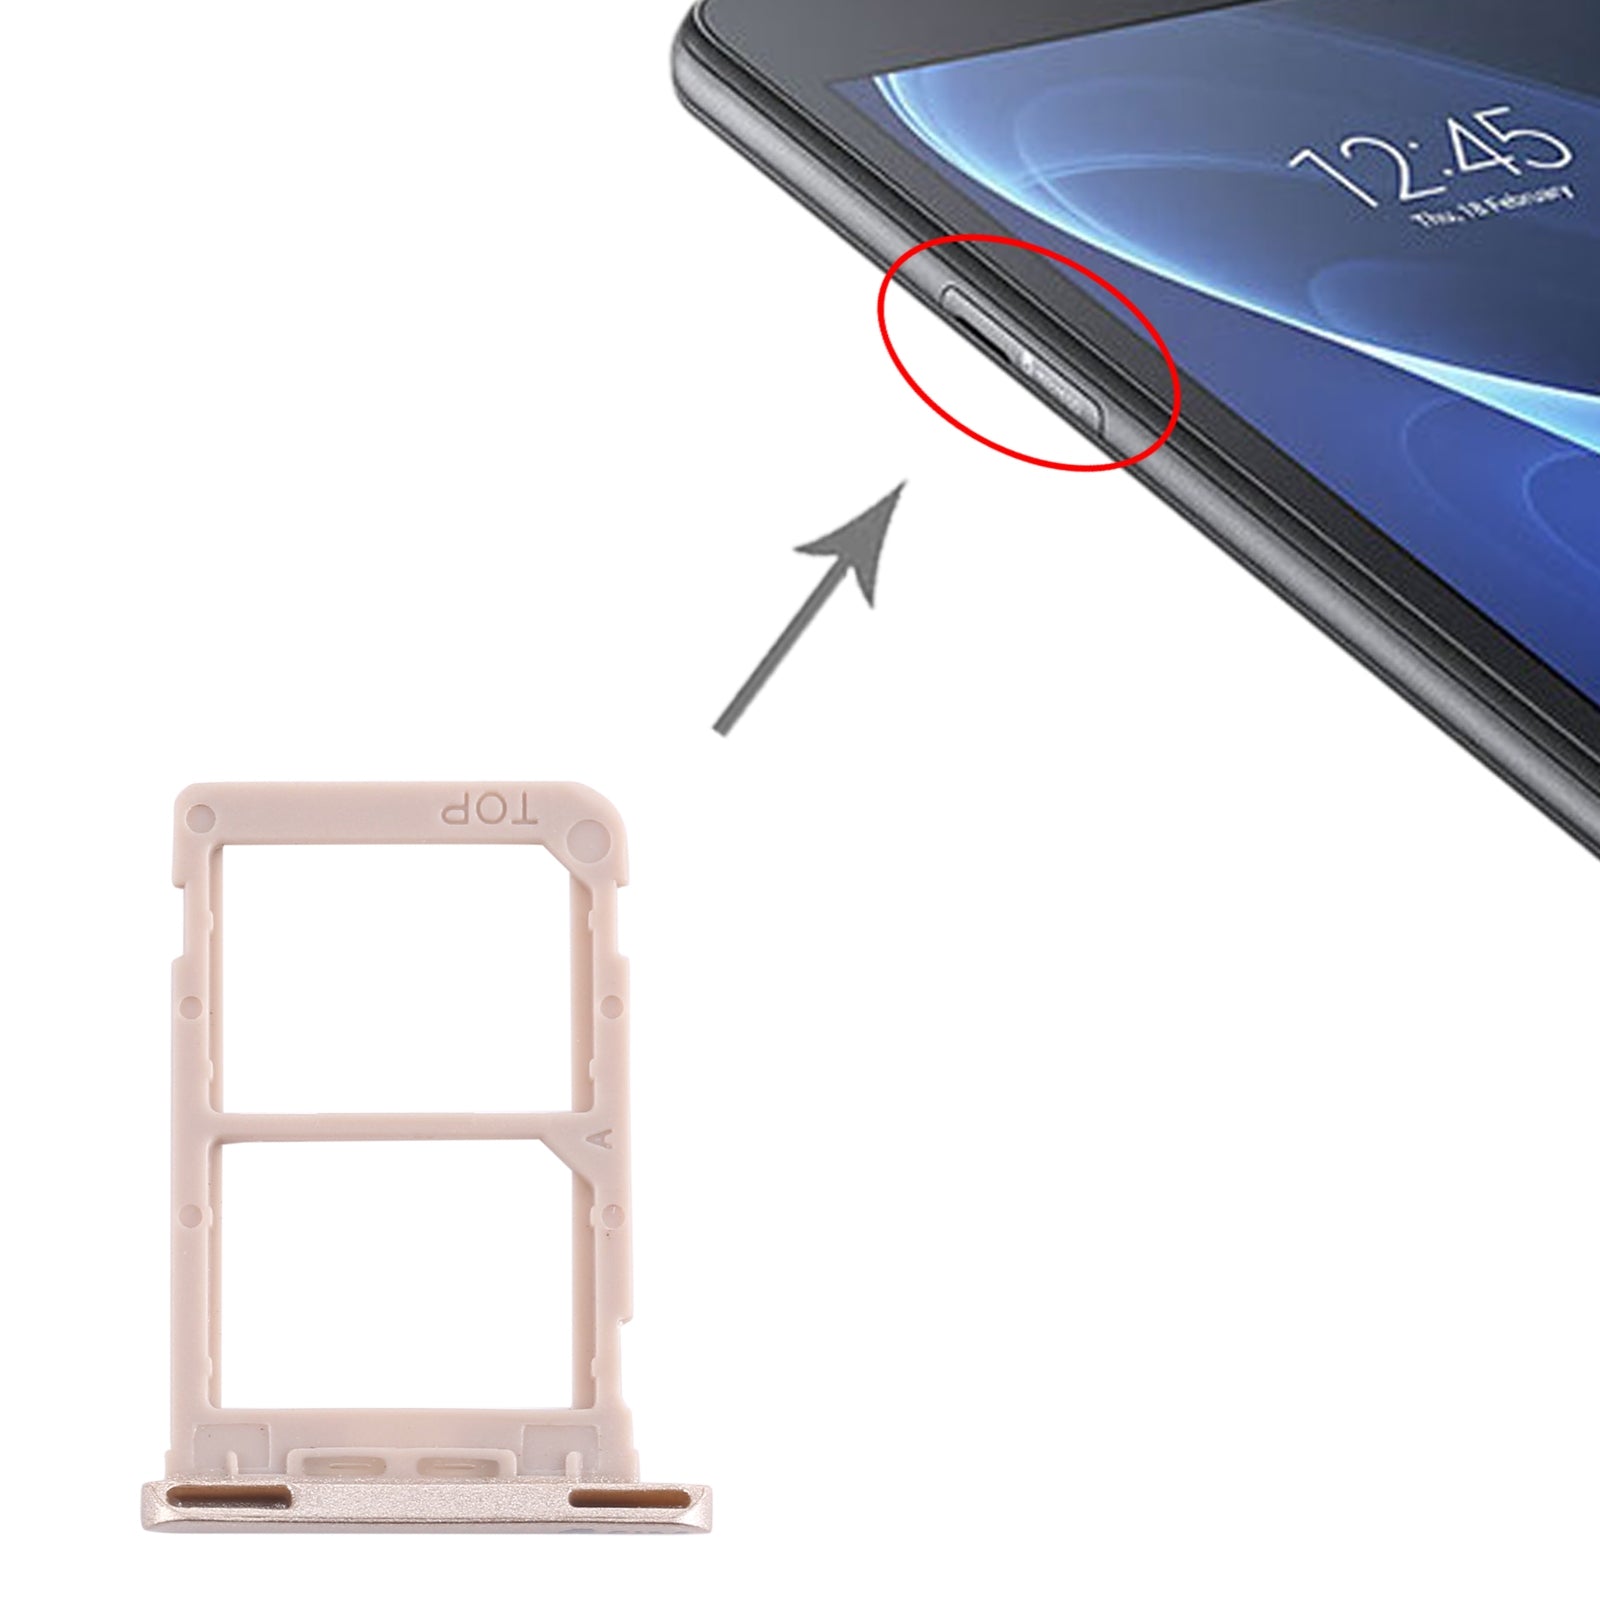 Dual SIM SIM Holder Tray Samsung Galaxy Tab A 7.0 2016 T285 Gold